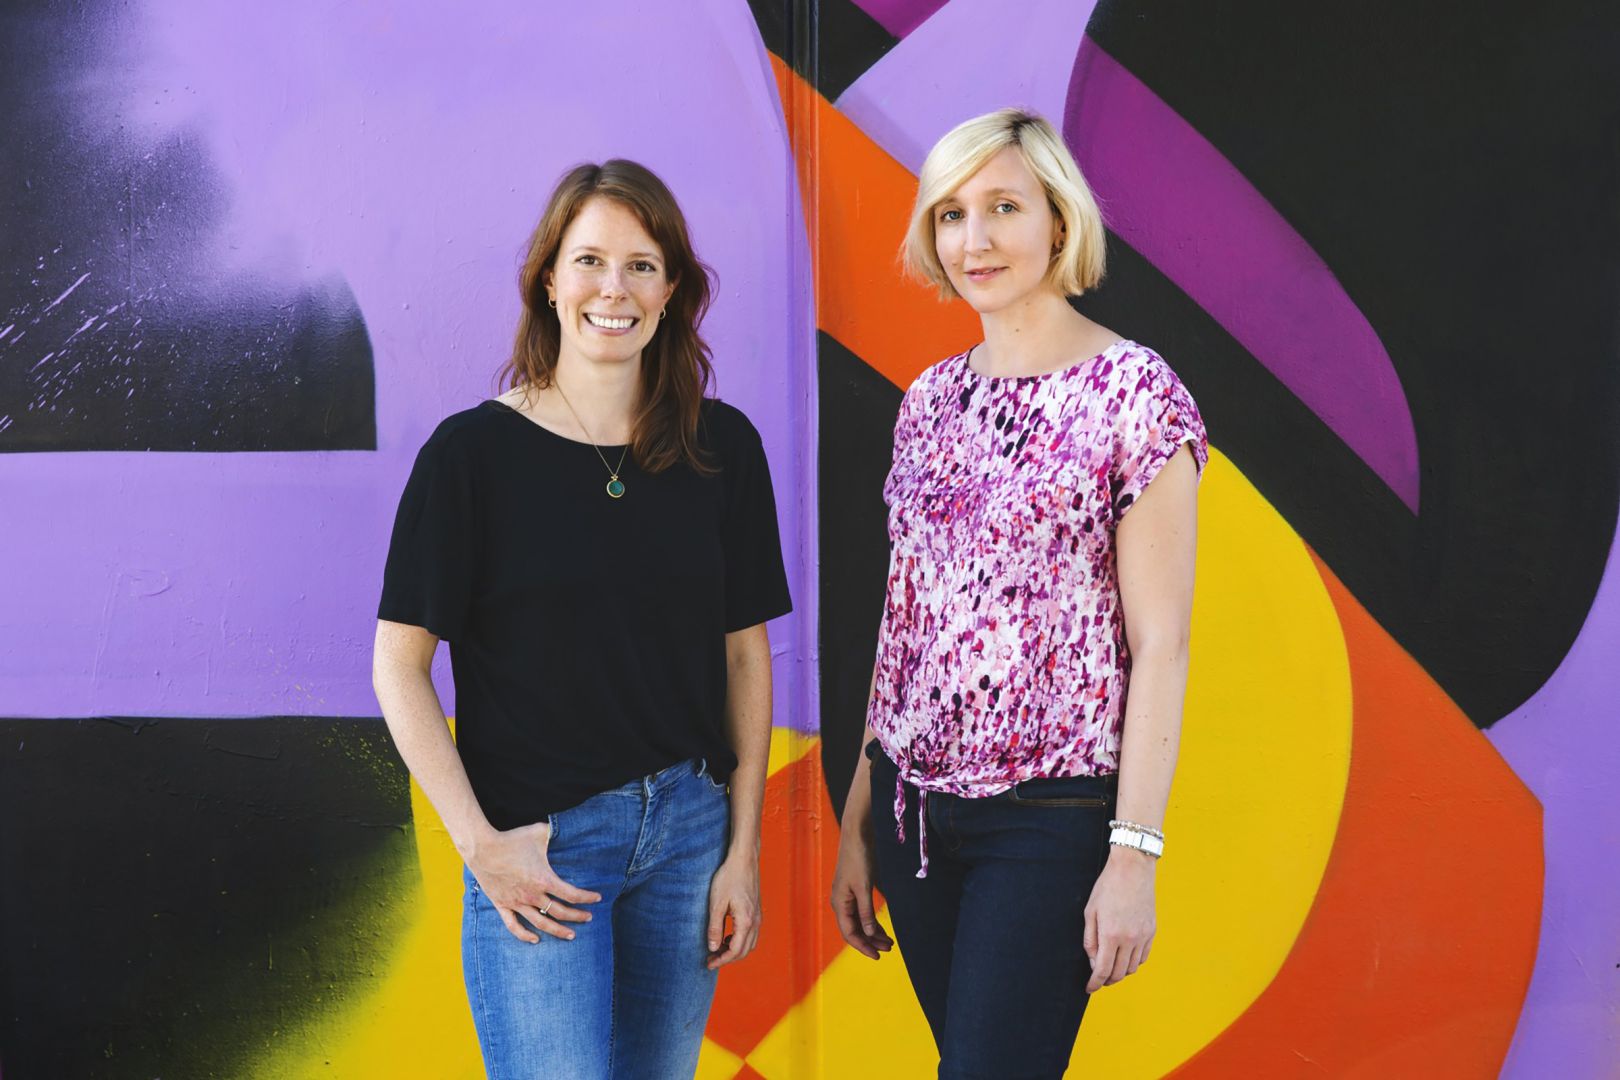 Das Team der Geschäftsstelle Kreativwirtschaft Hessen: Daniela Hartmann und Susanne Stöck stehen vor einer bunten Wand.